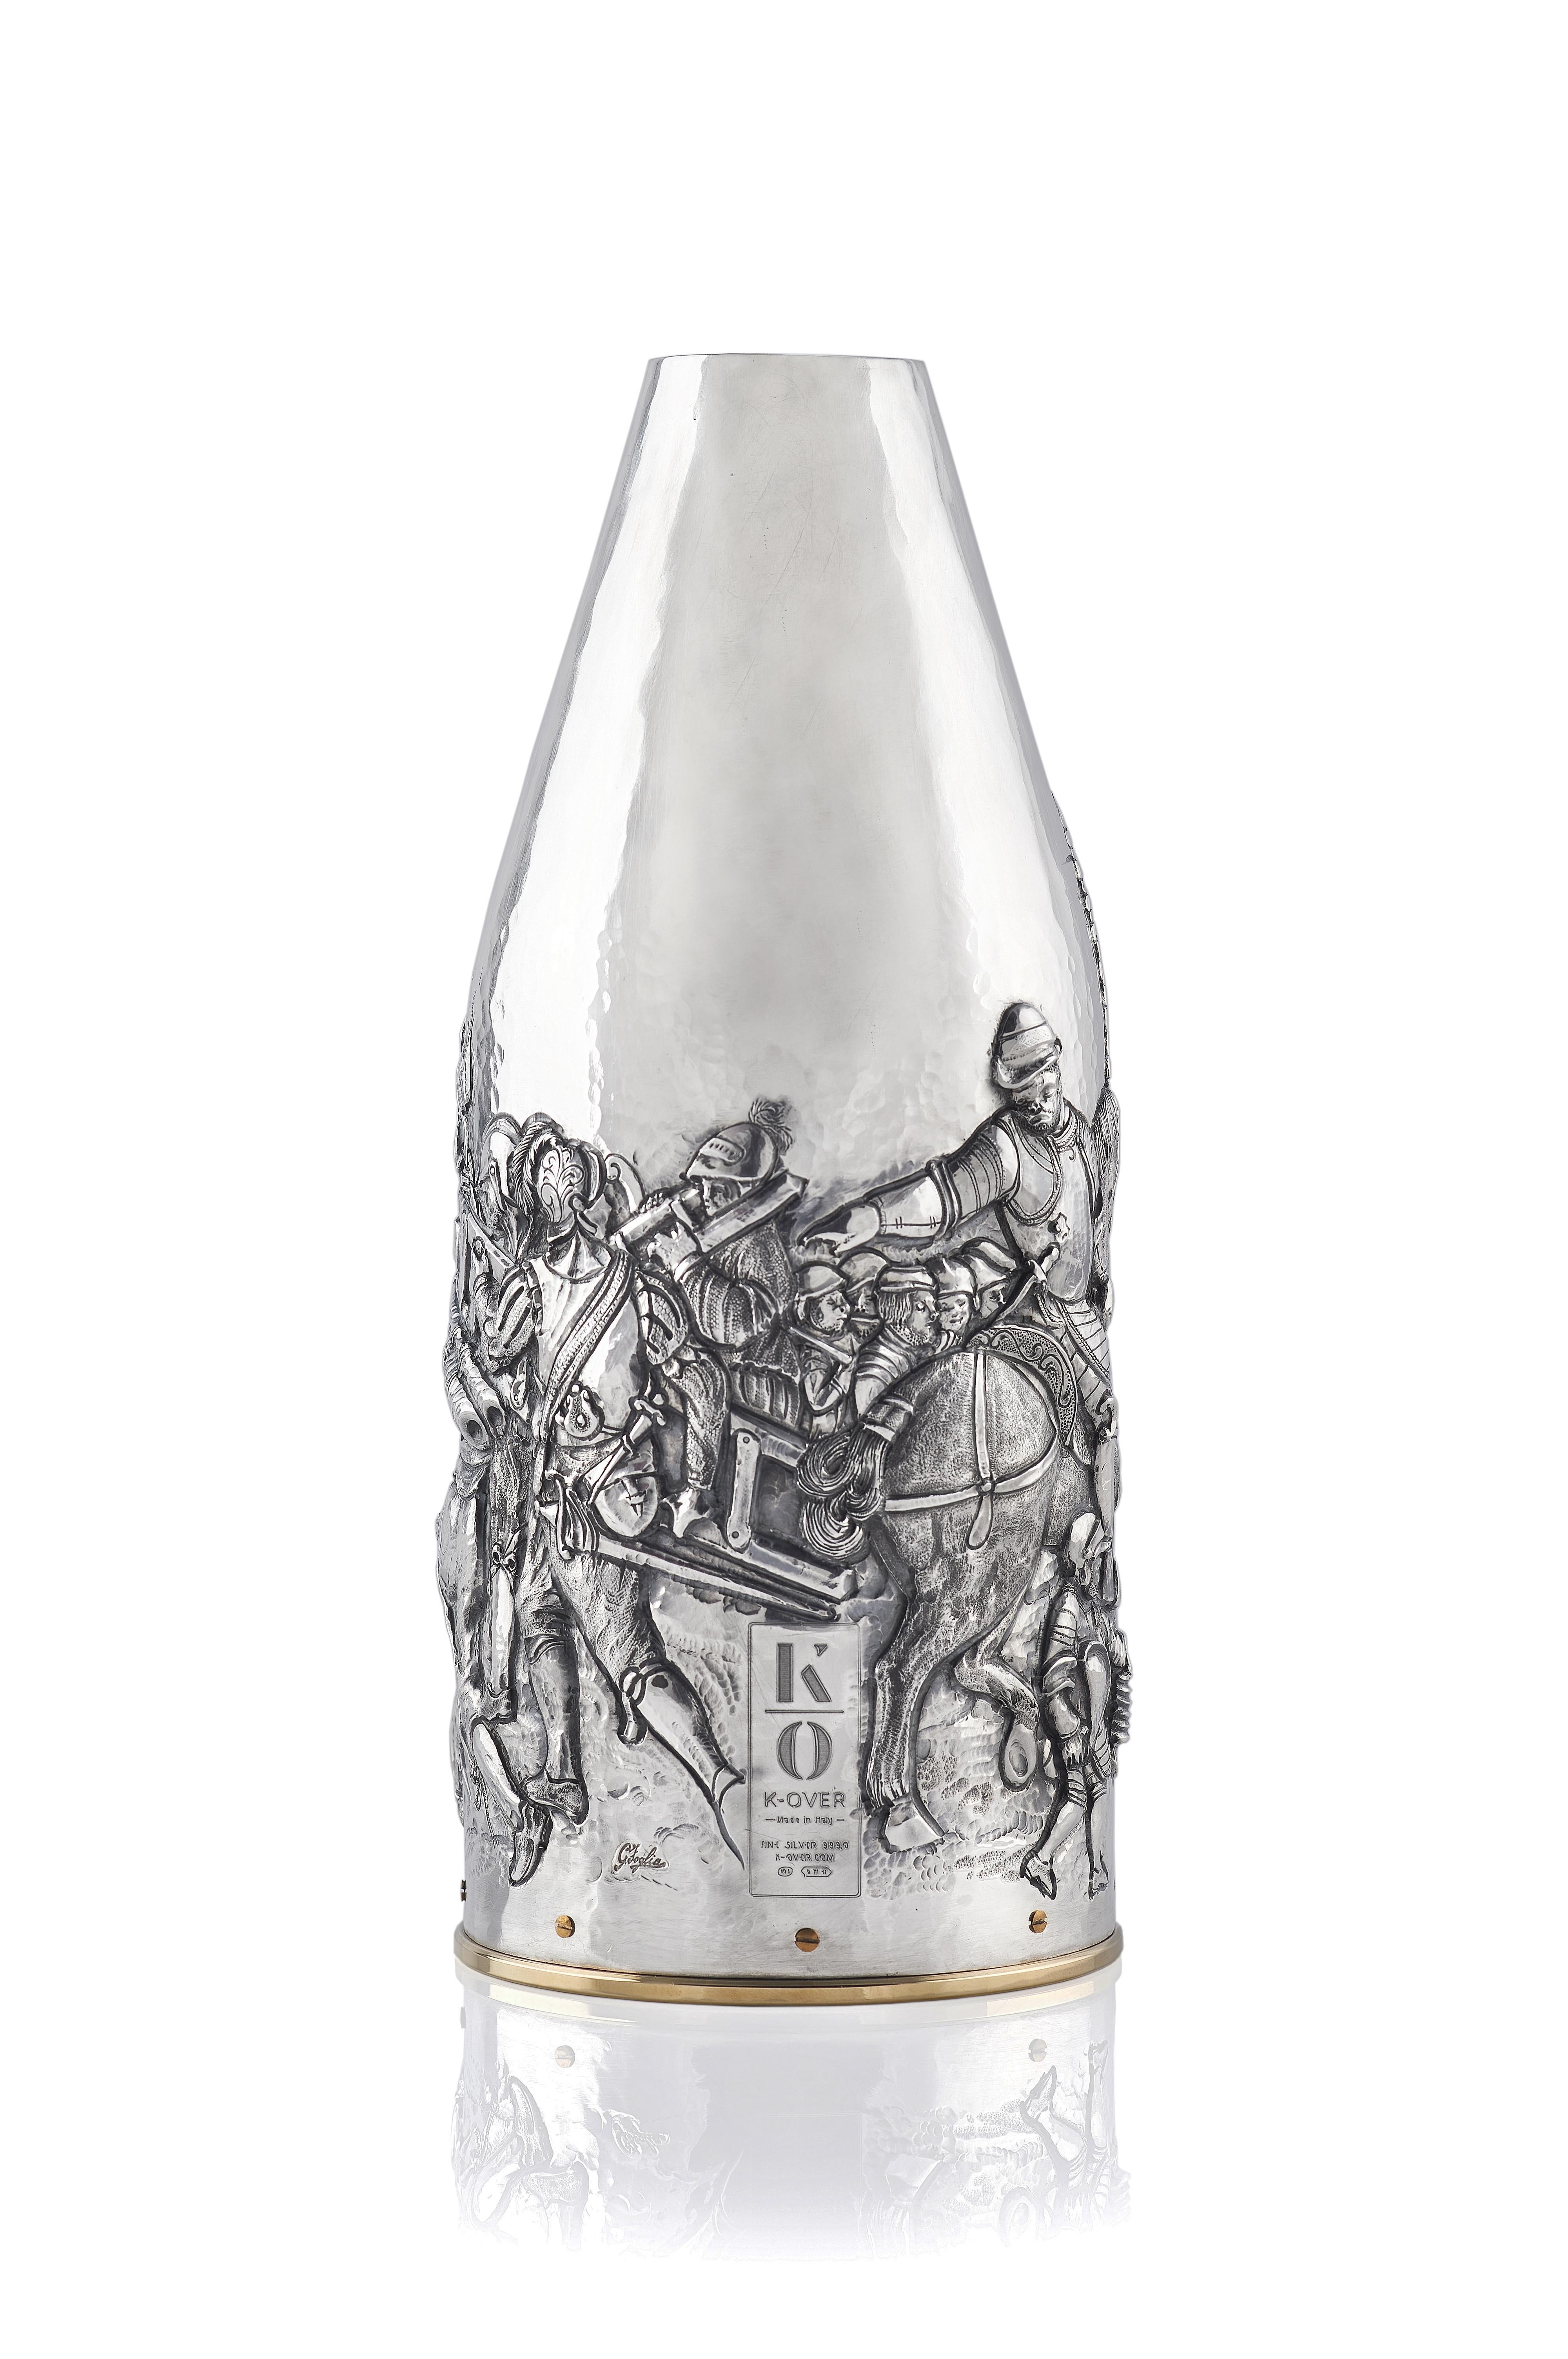 Questa cover per bottiglia di champagne è una vera opera d’arte. L’artista ha riprodotto, il famoso dipinto la “battaglia di porta Camollia” di Giorgio Vasari (in palazzo Vecchio a Firenze) su una K-OVER in argento puro 999/°°, cesellando cosa